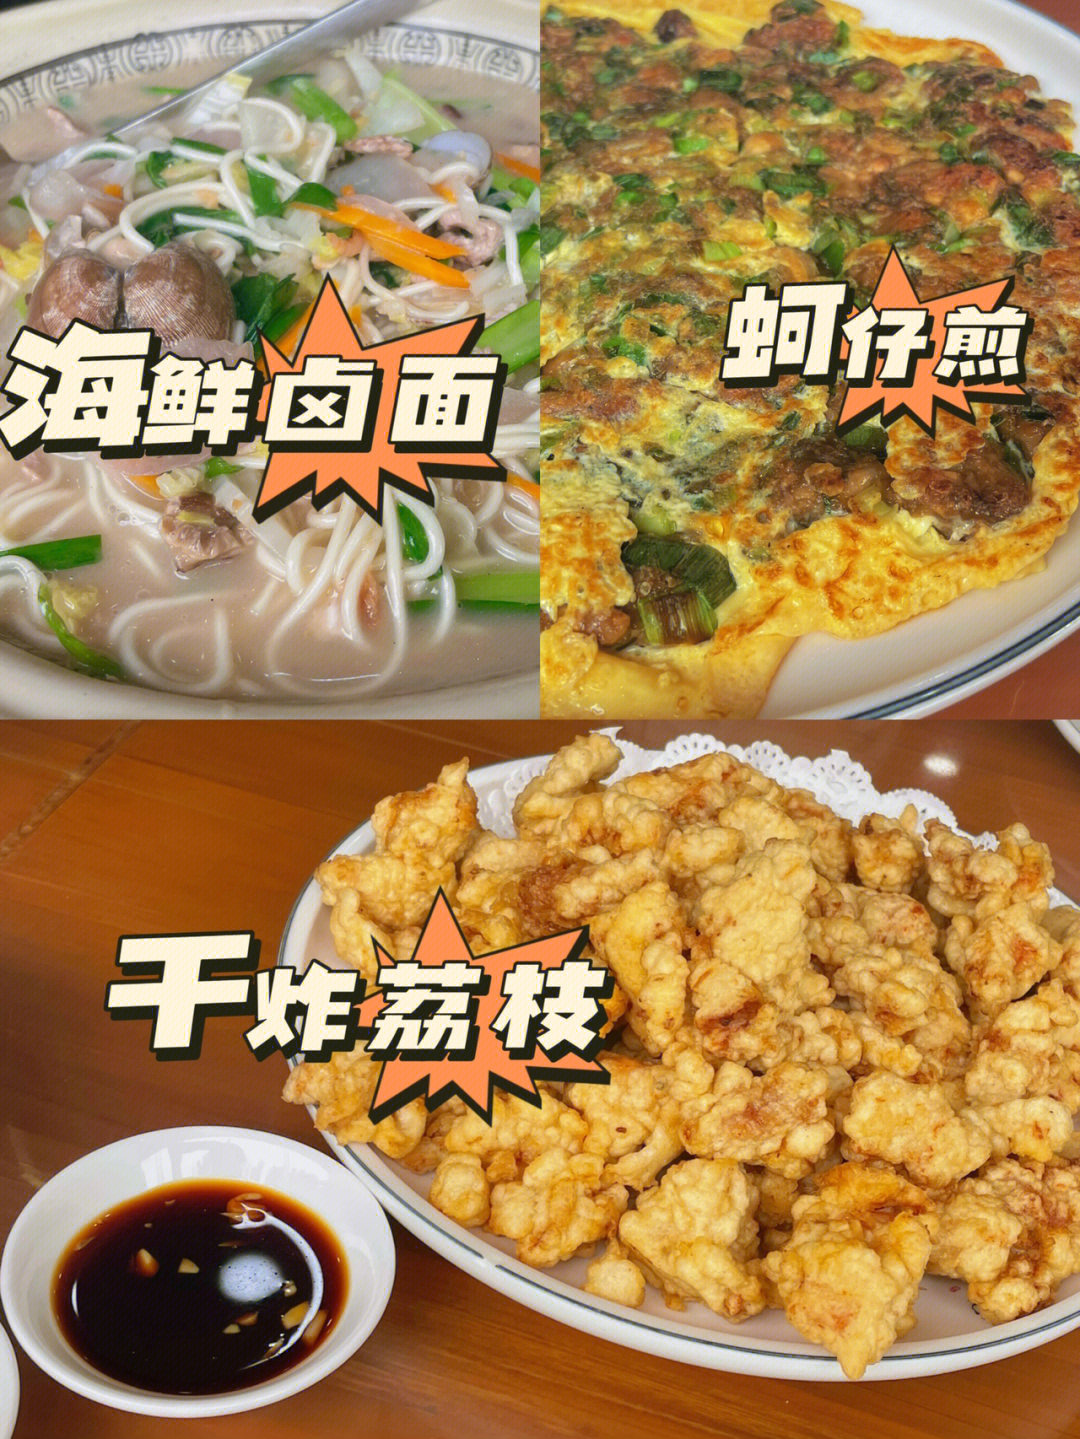 闽南菜谱大全图片图片